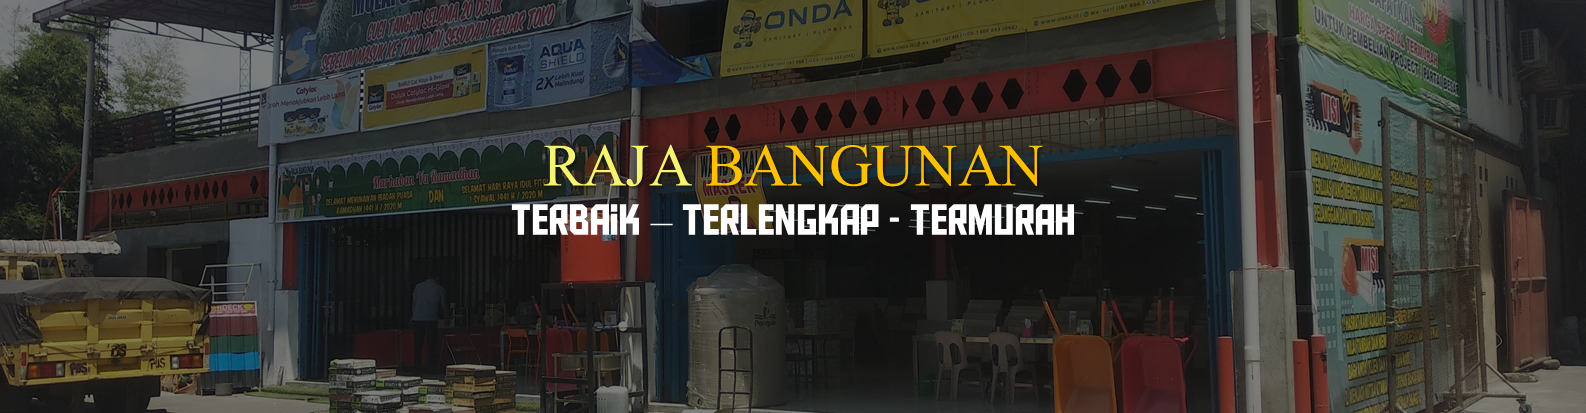 RAJA BANGUNAN Distributor Retail Keramik  Murah Medan